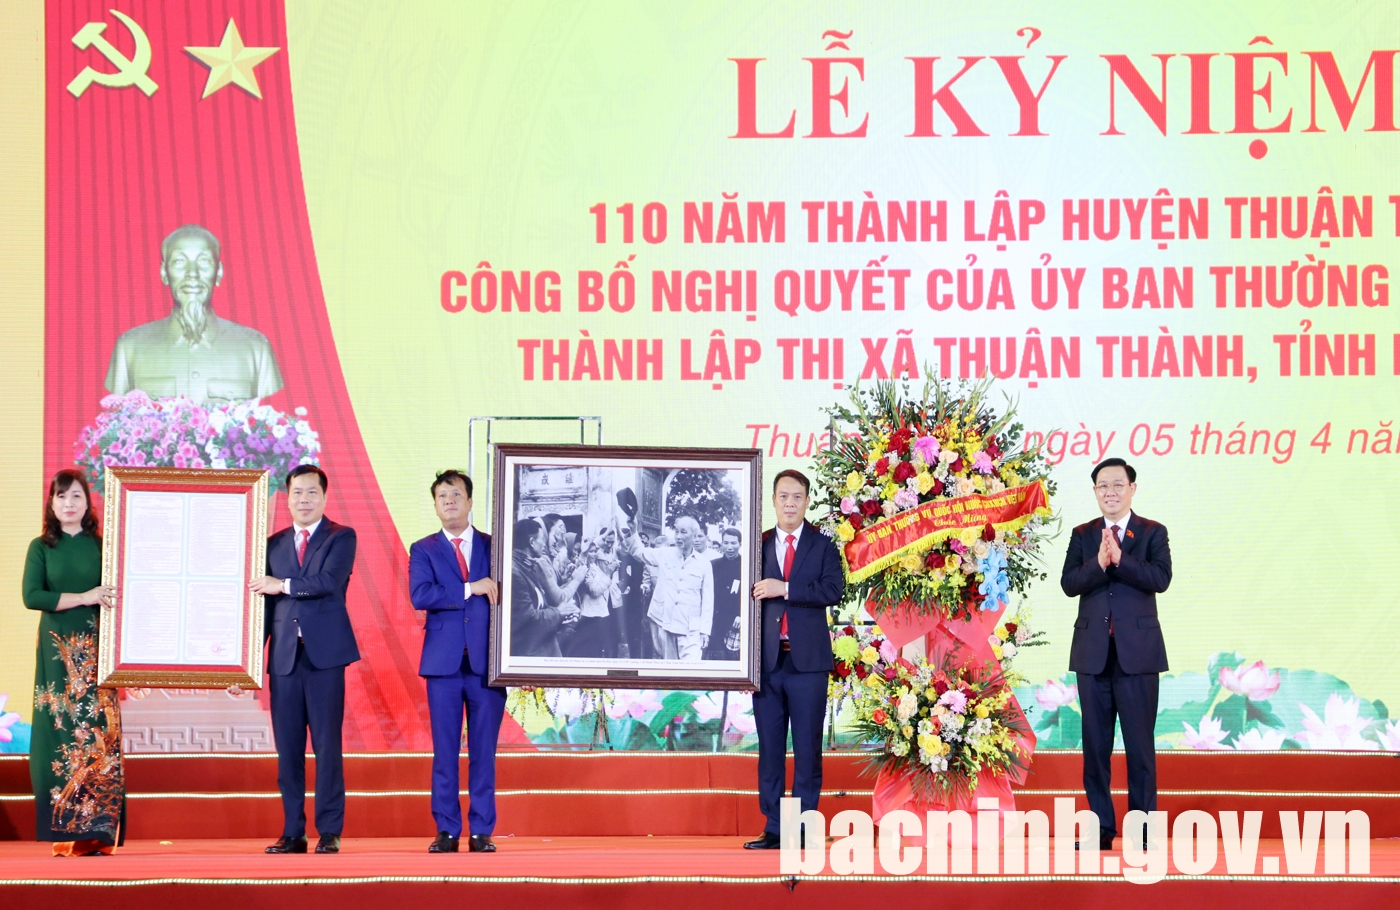 Lễ công bố thành lập thị xã Thuận Thành